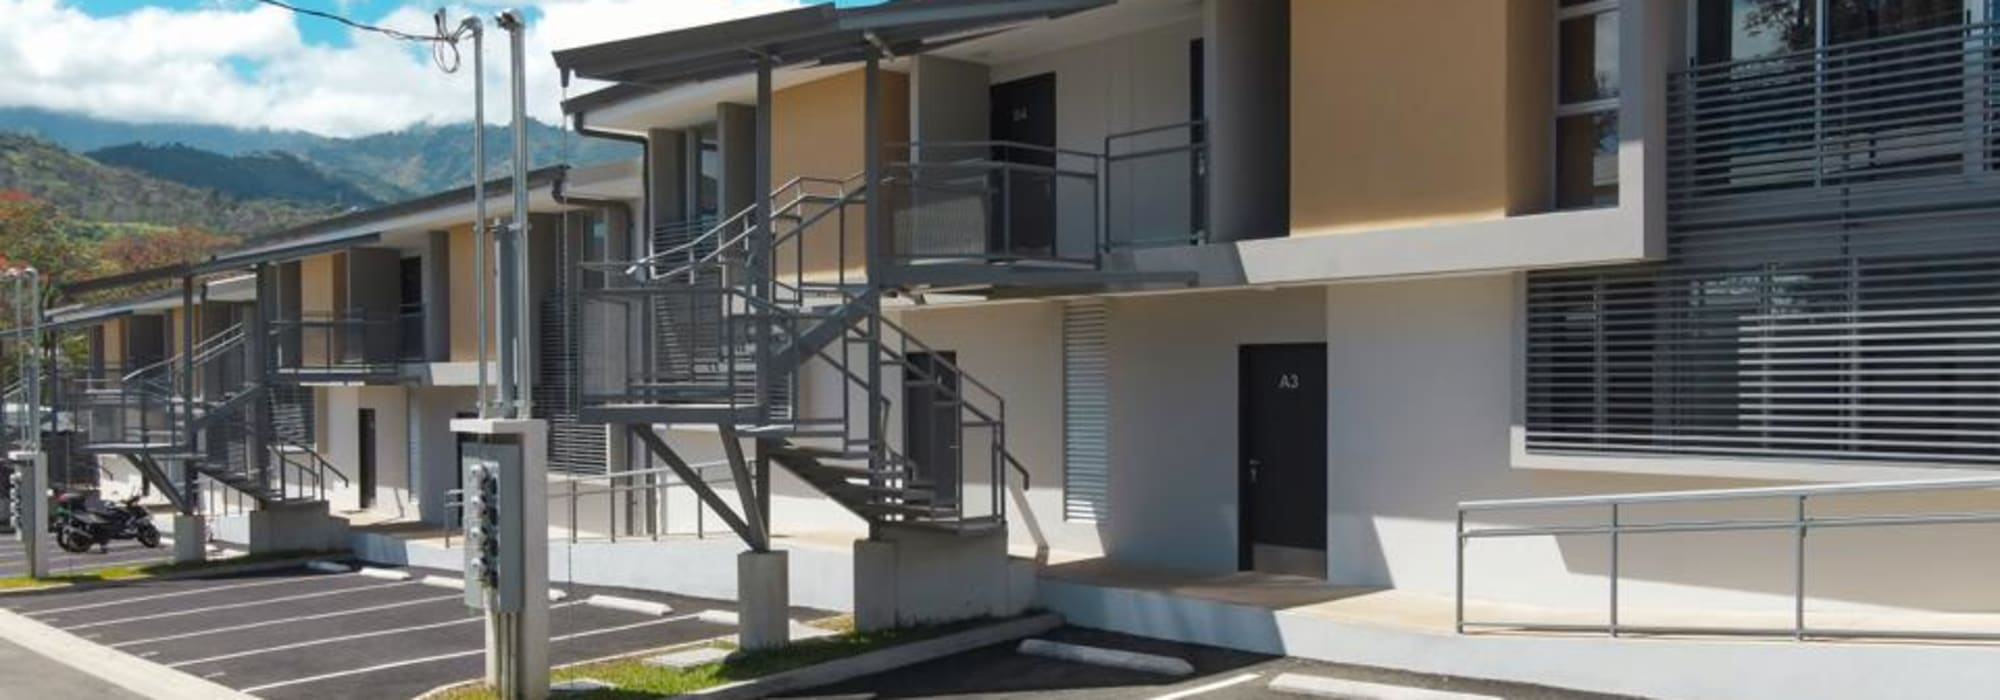 Apartamento  nuevo $121.000 en San Rafael Abajo de Desamparados